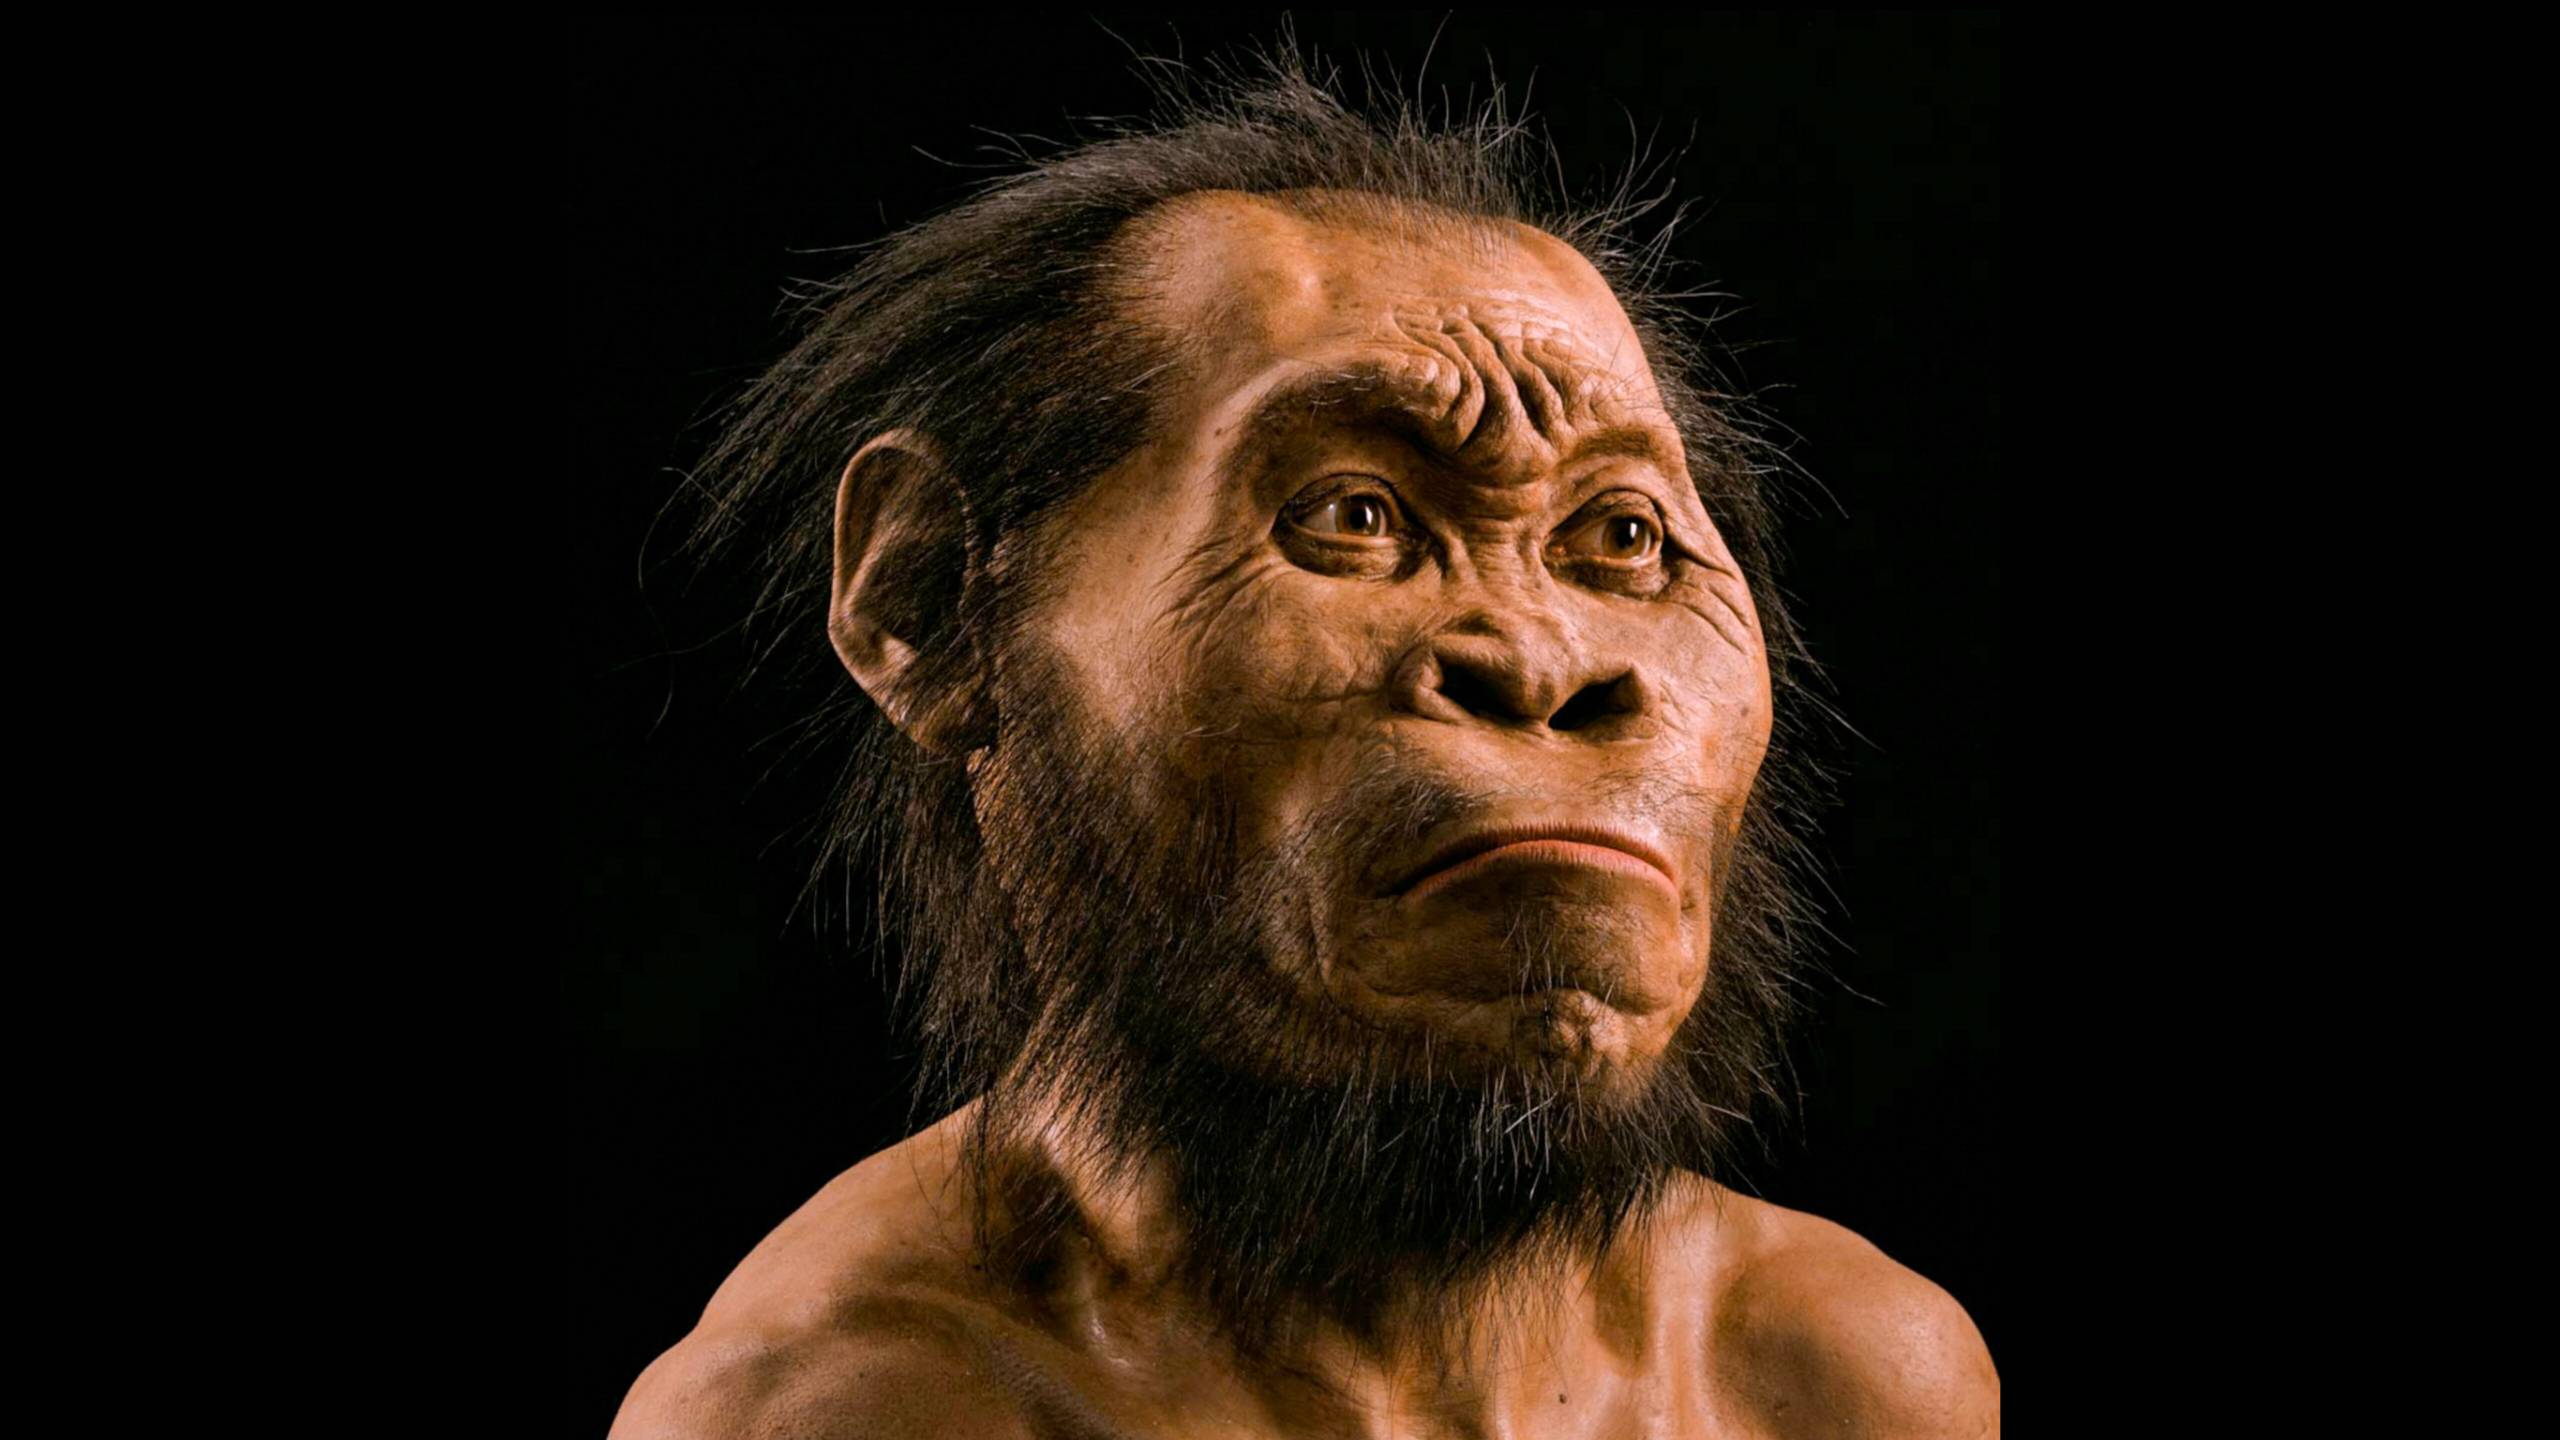 使用骨骼掃描，古生物學家 John Gurche 花費了大約 700 個小時重建了 Homo naledi 的頭部。